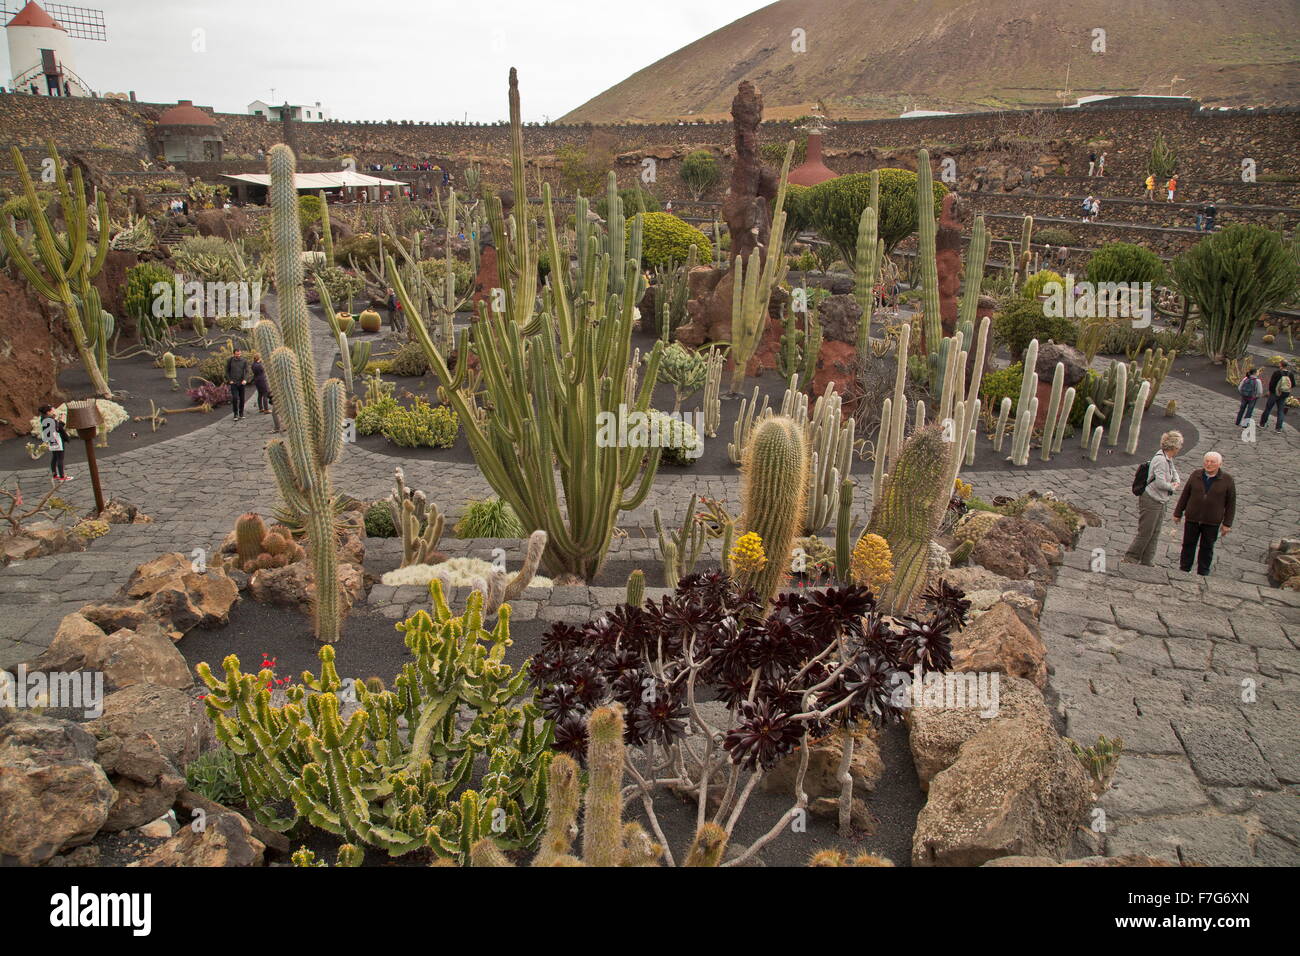 Jardín de Cactus, Jardín de Cactus, César Manrique, cactus, cactus, cactos, suculentas Foto de stock